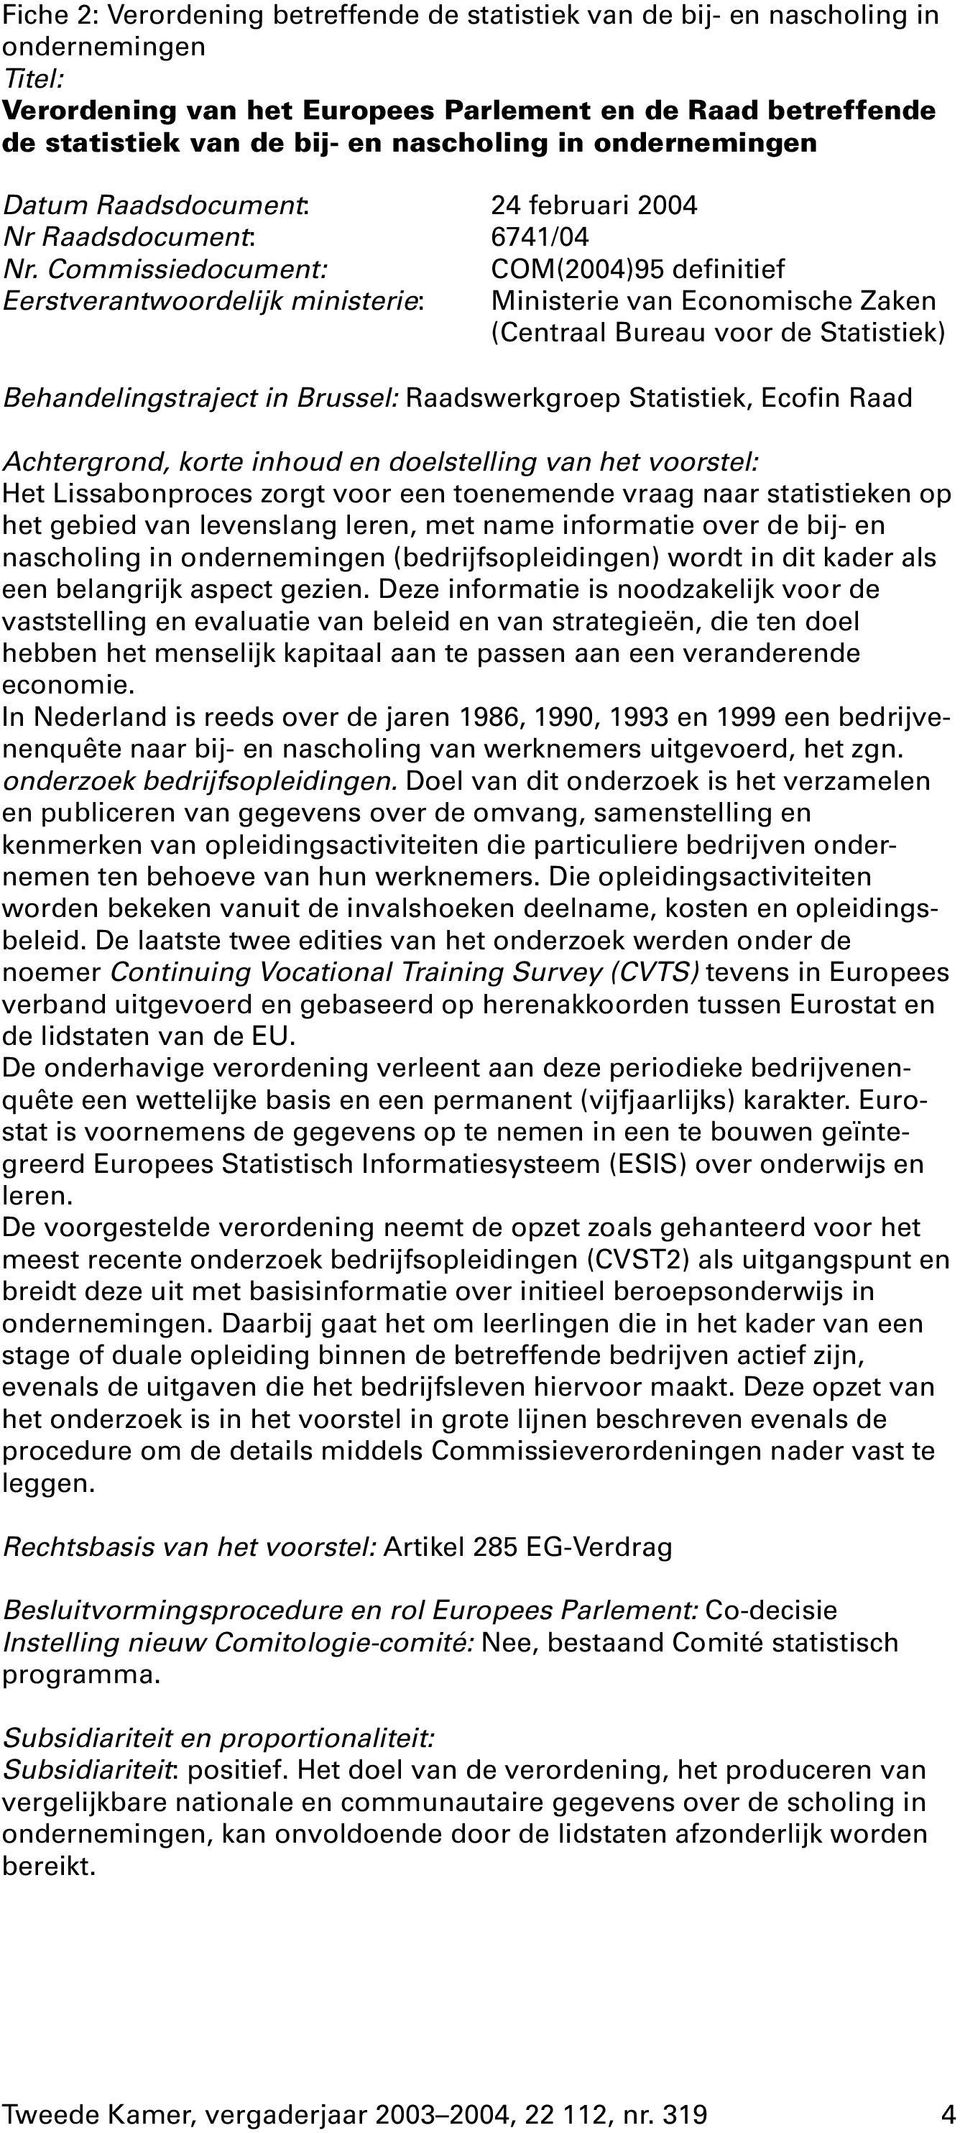 Commissiedocument: COM(2004)95 definitief Eerstverantwoordelijk ministerie: Ministerie van Economische Zaken (Centraal Bureau voor de Statistiek) Behandelingstraject in Brussel: Raadswerkgroep